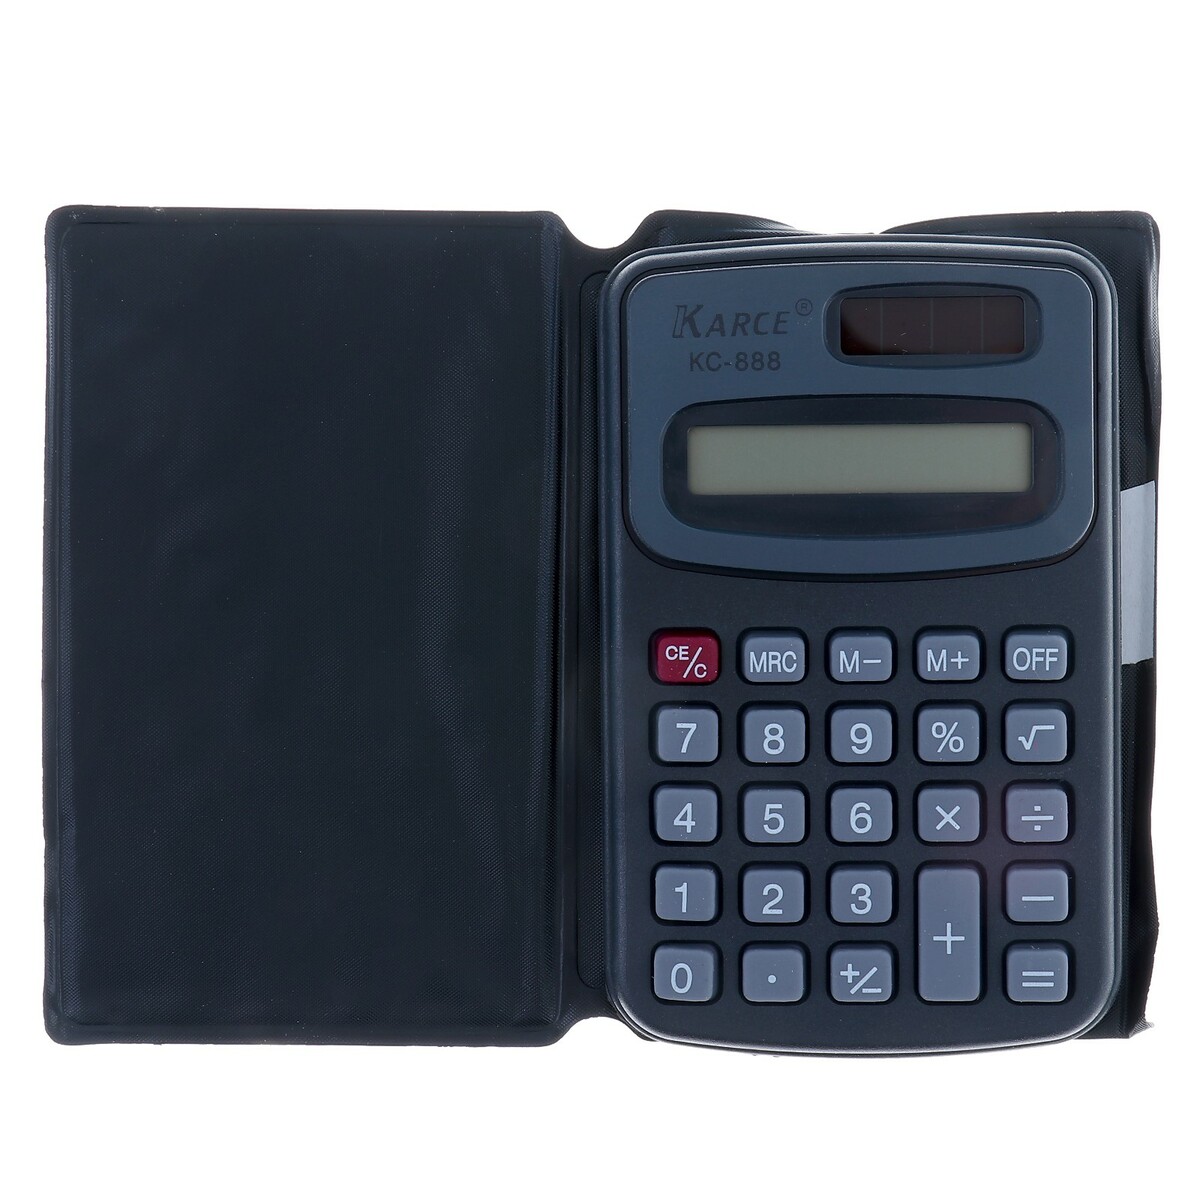 Калькулятор карманный с чехлом 8 - разрядный, kc - 888, работает от батарейки (таблетка ag 10) калькулятор карманный 8 разрядный kk 402 работает от батарейки